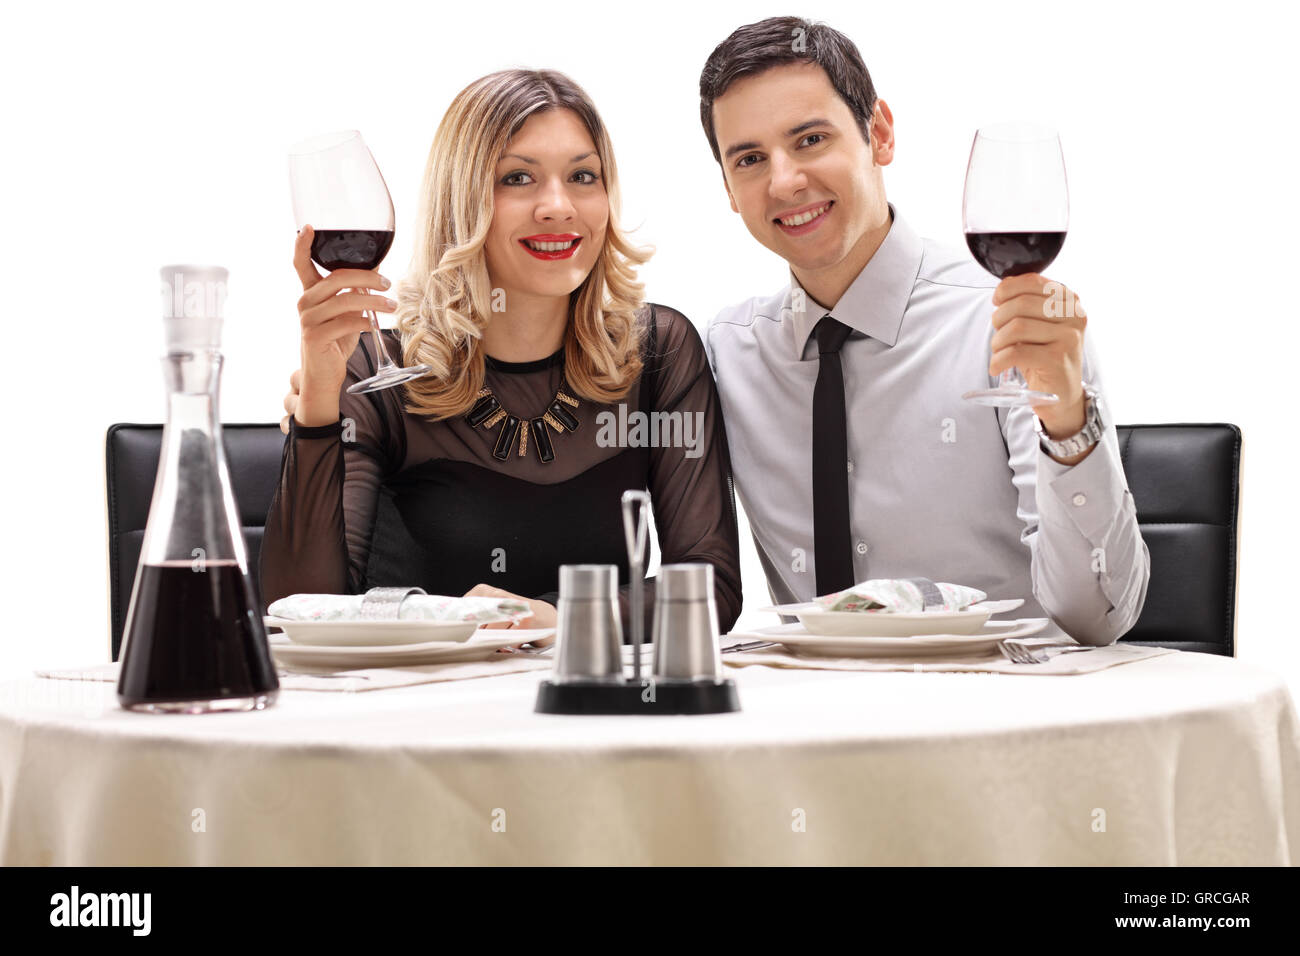 Junger Mann und Frau auf ein Datum posing zusammen isoliert auf weißem Hintergrund Stockfoto